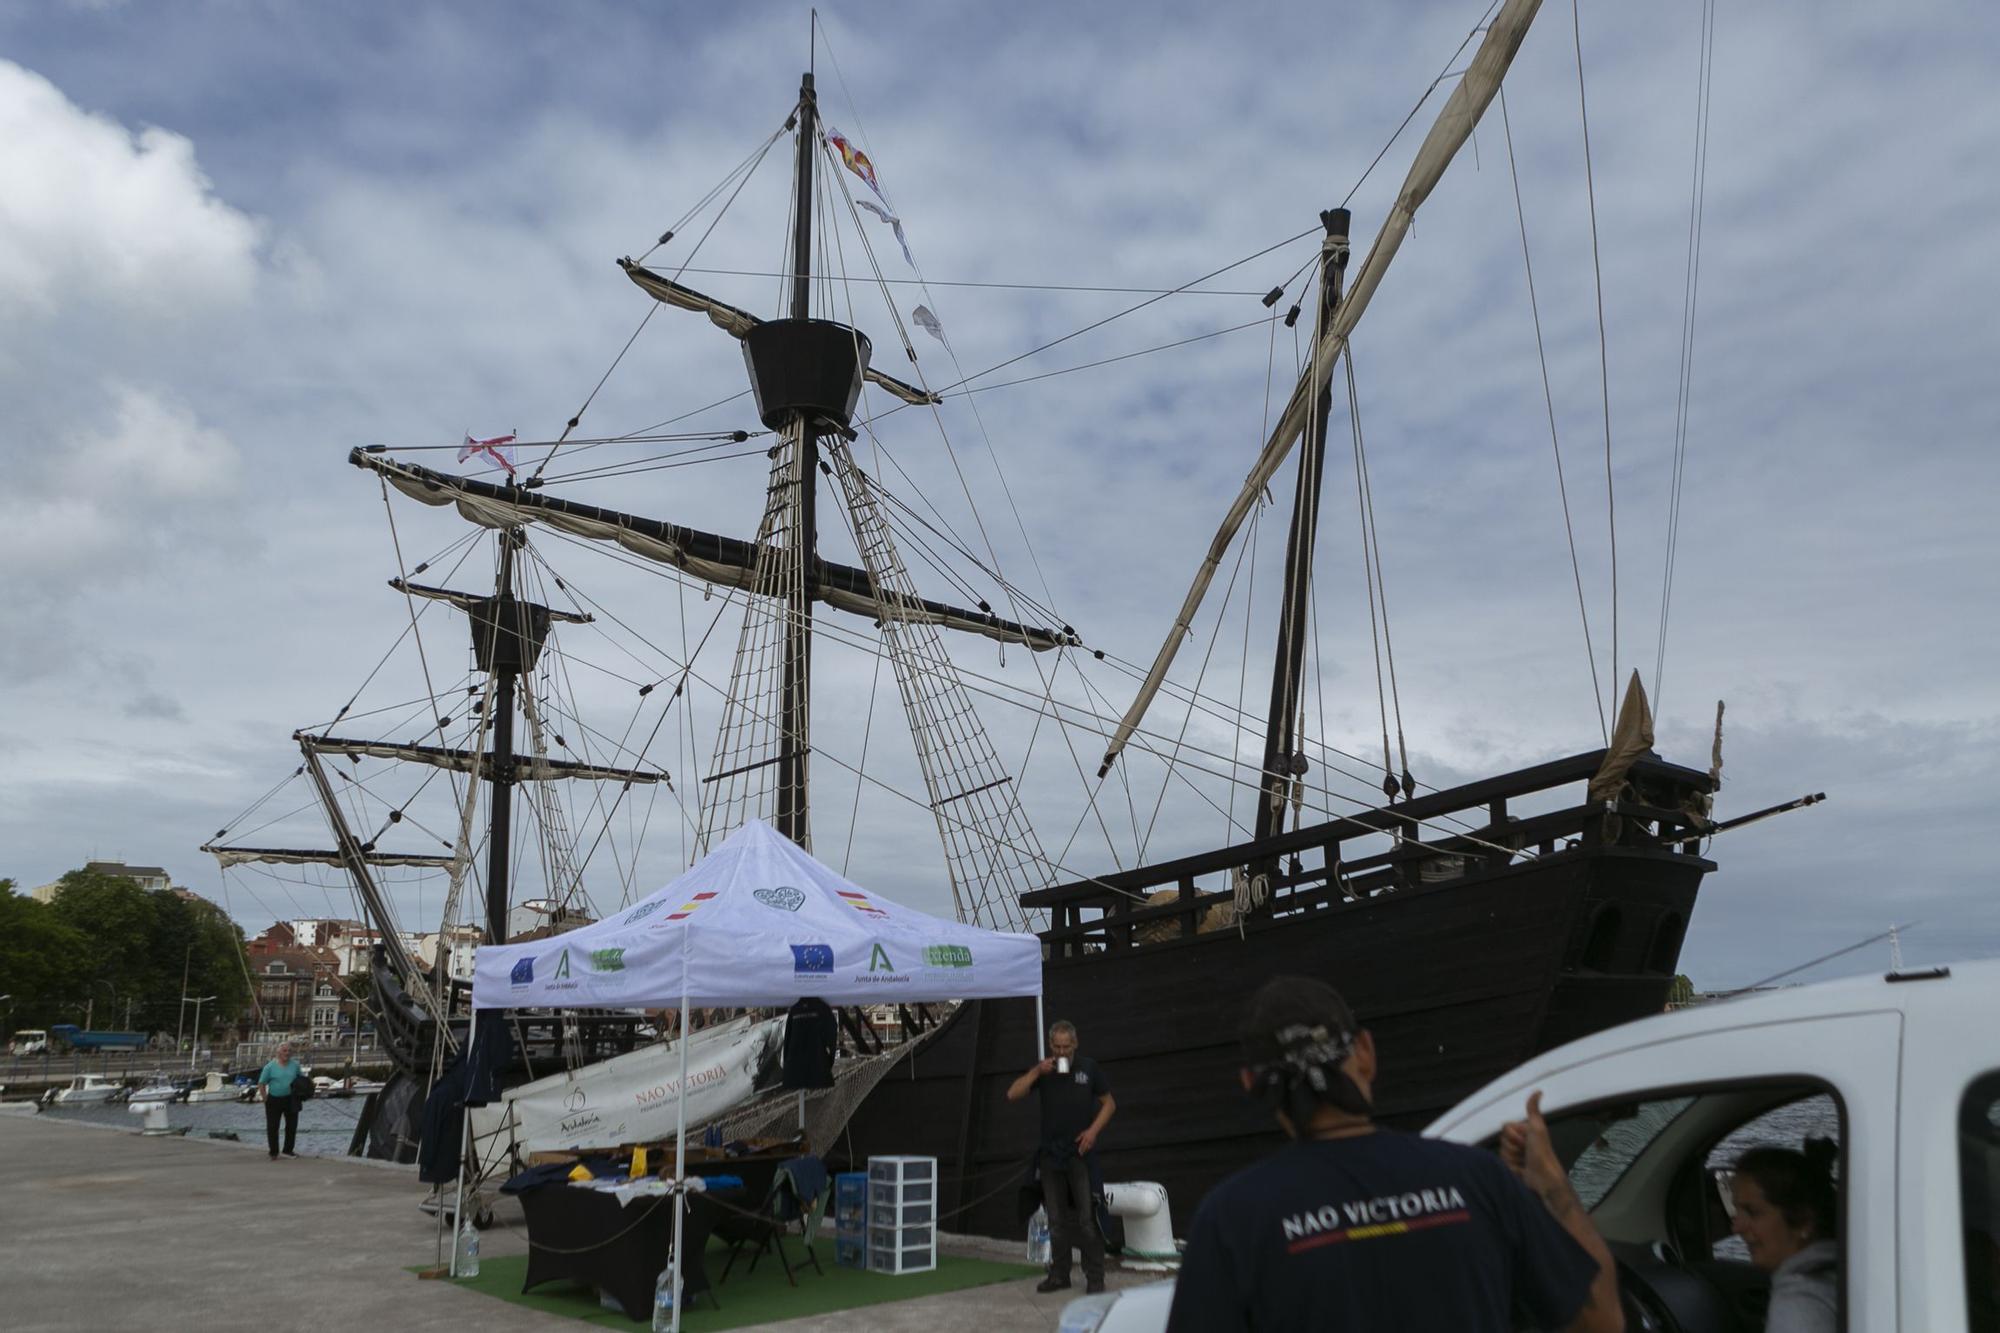 La nao "Victoria" atraca en el puerto de Avilés